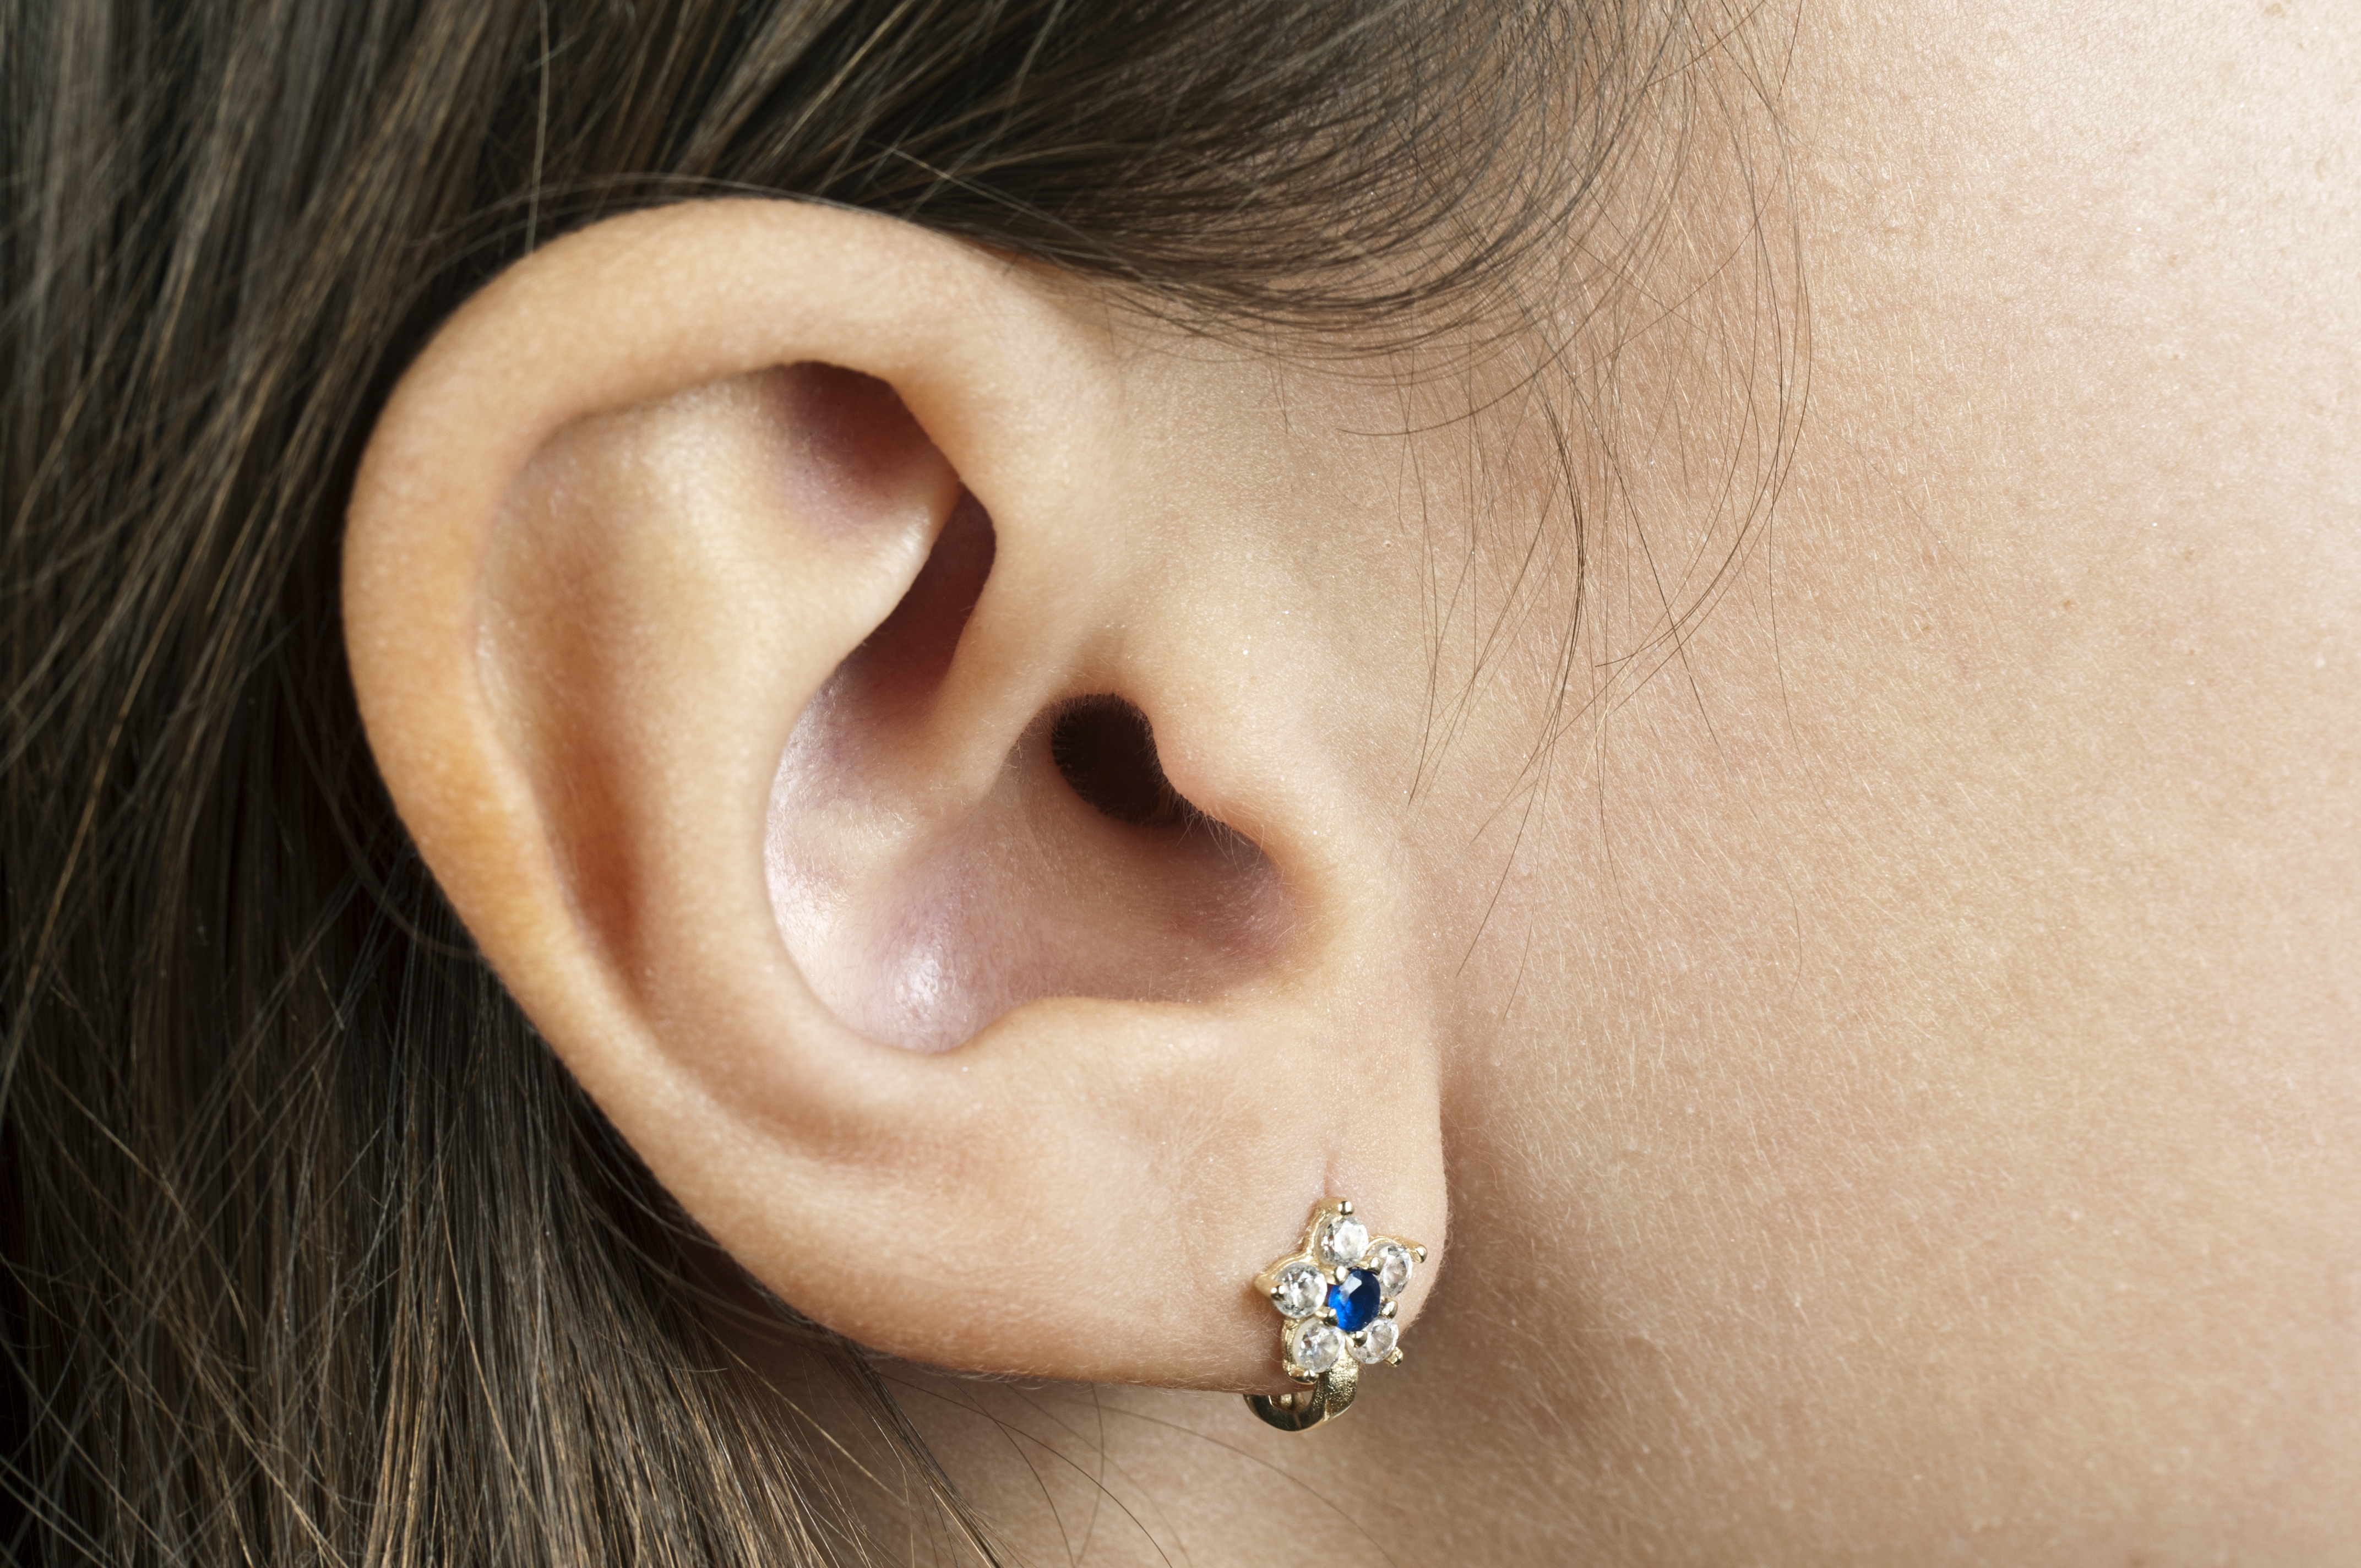 Menschliches Ohr | Quelle: Getty Images